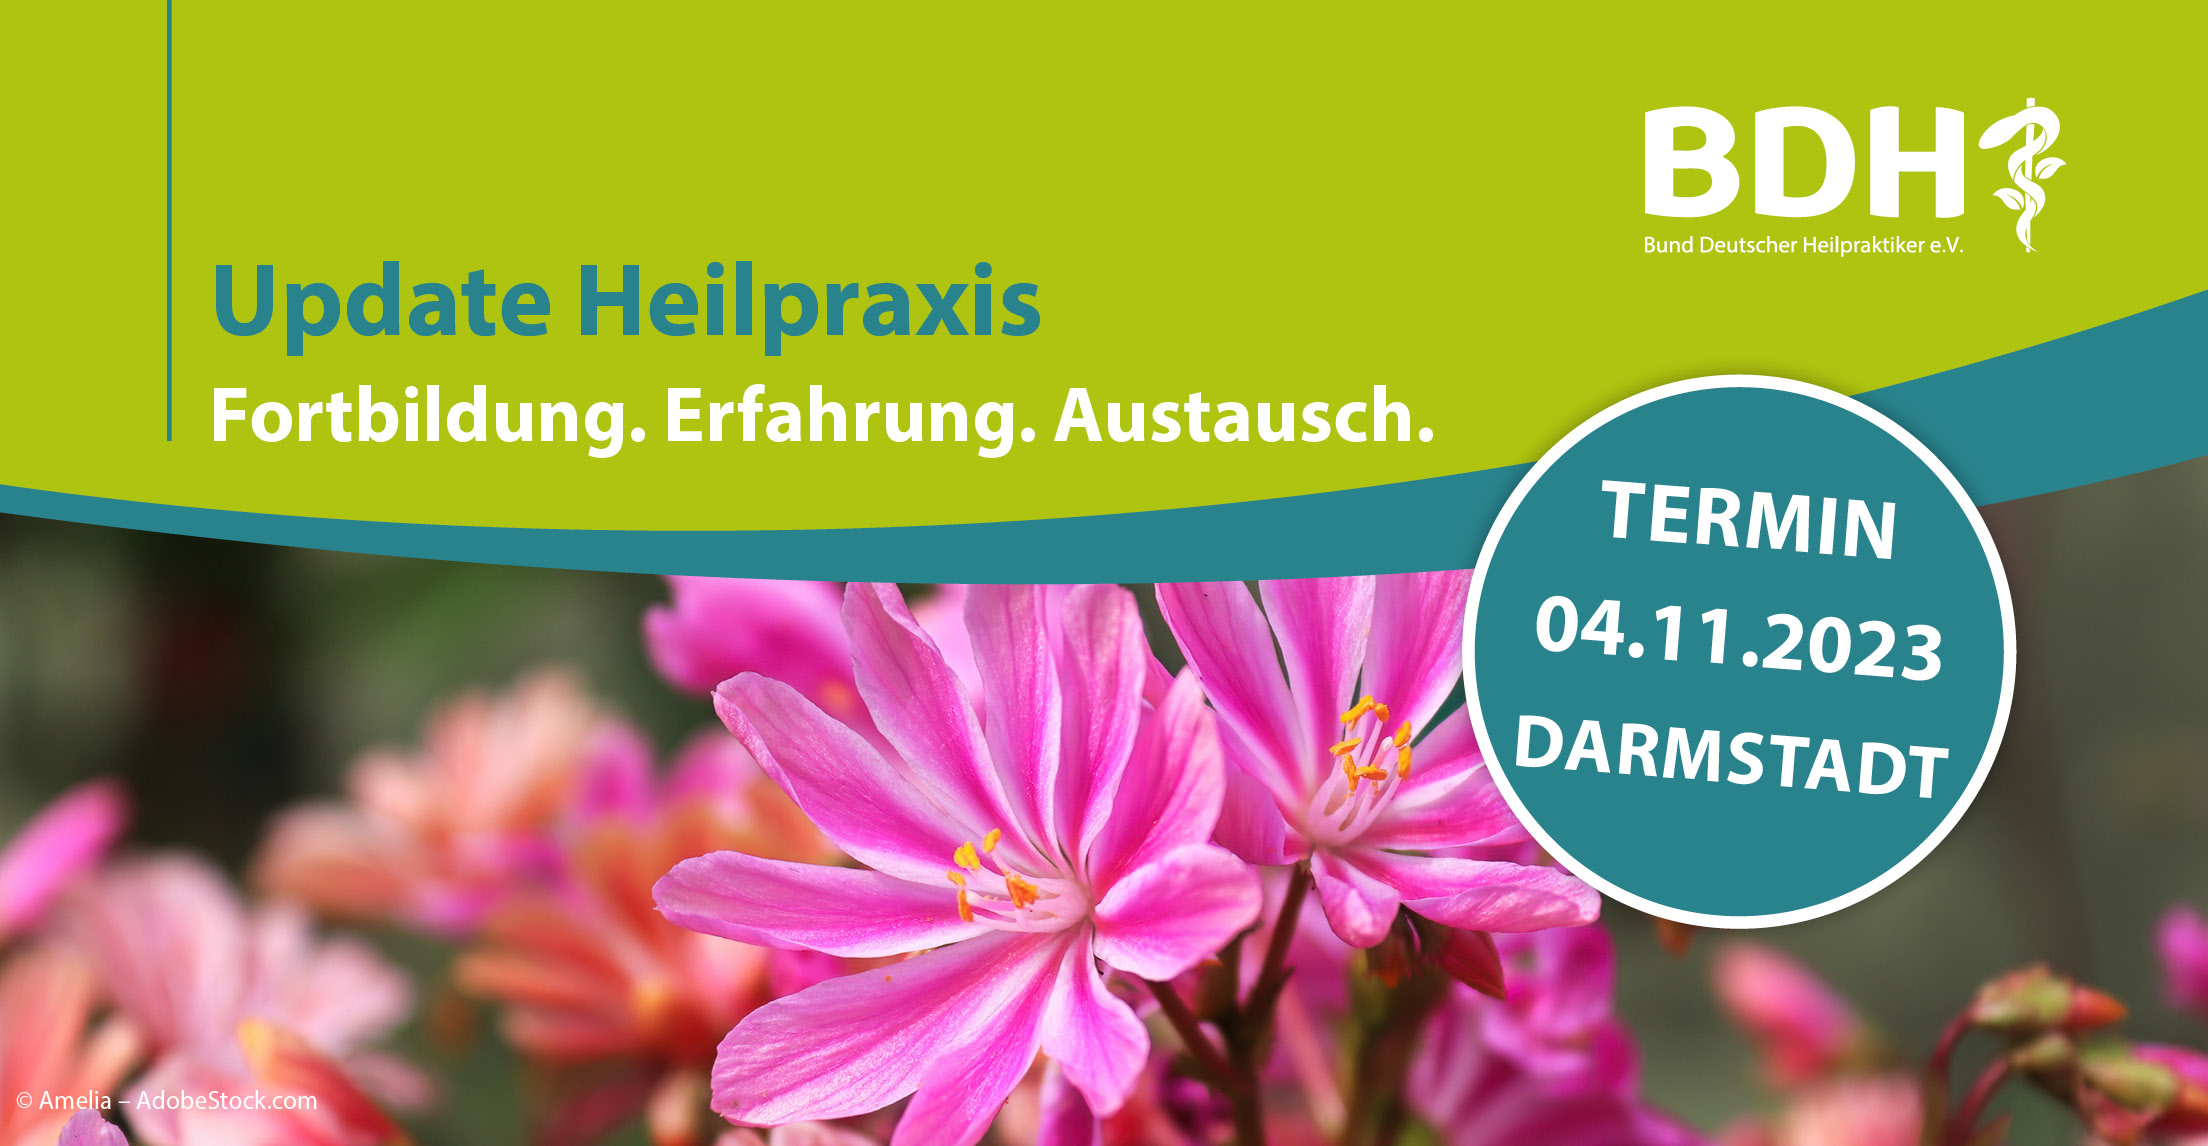 „Update Heilpraxis“ Darmstadt 2023 – Jetzt anmelden!